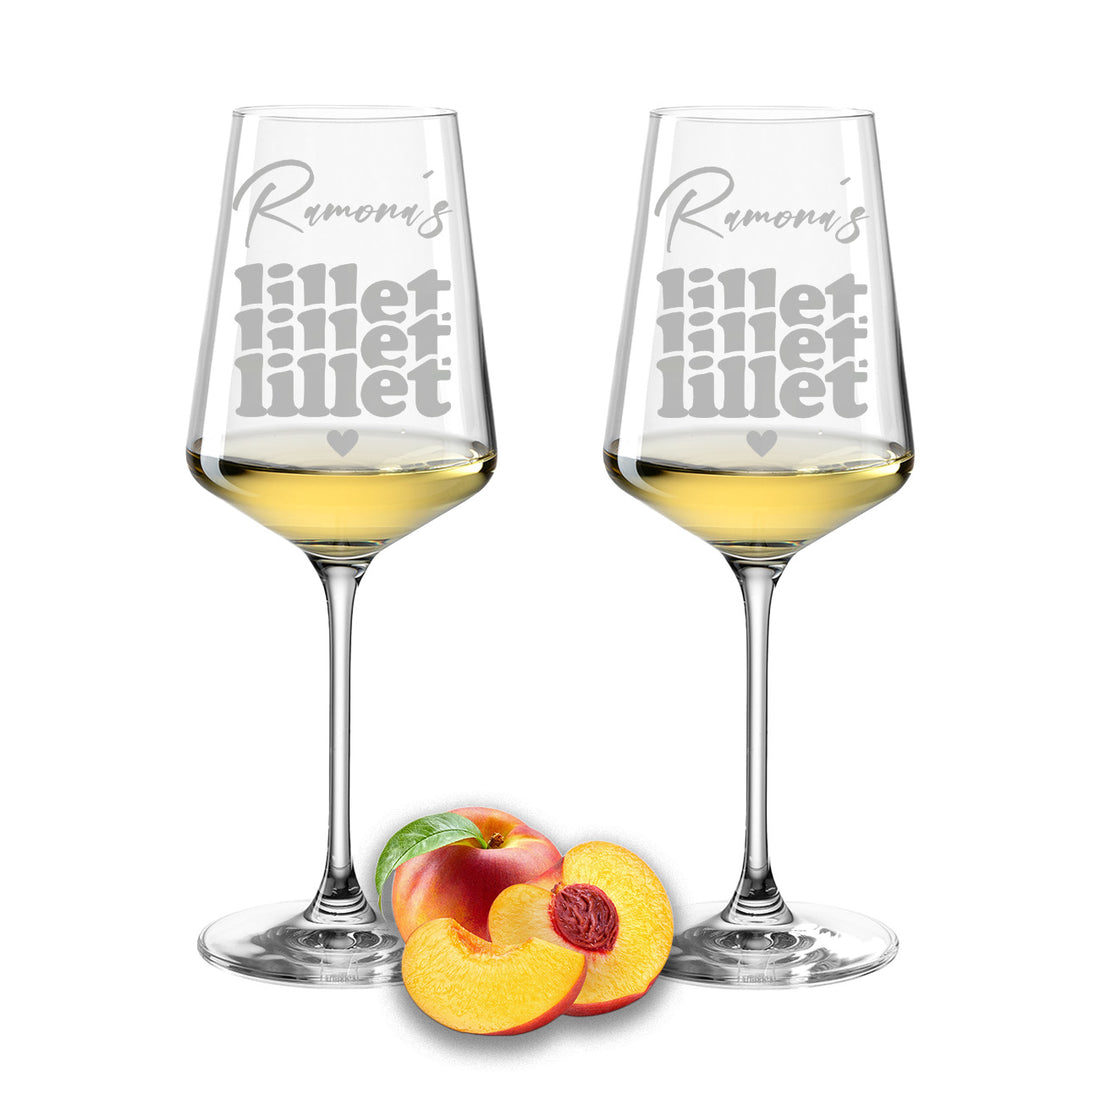 Weinglas mit Gravur Leonardo Puccini "LILLET LILLET LILLET" 2 Gläser mit Wunschname